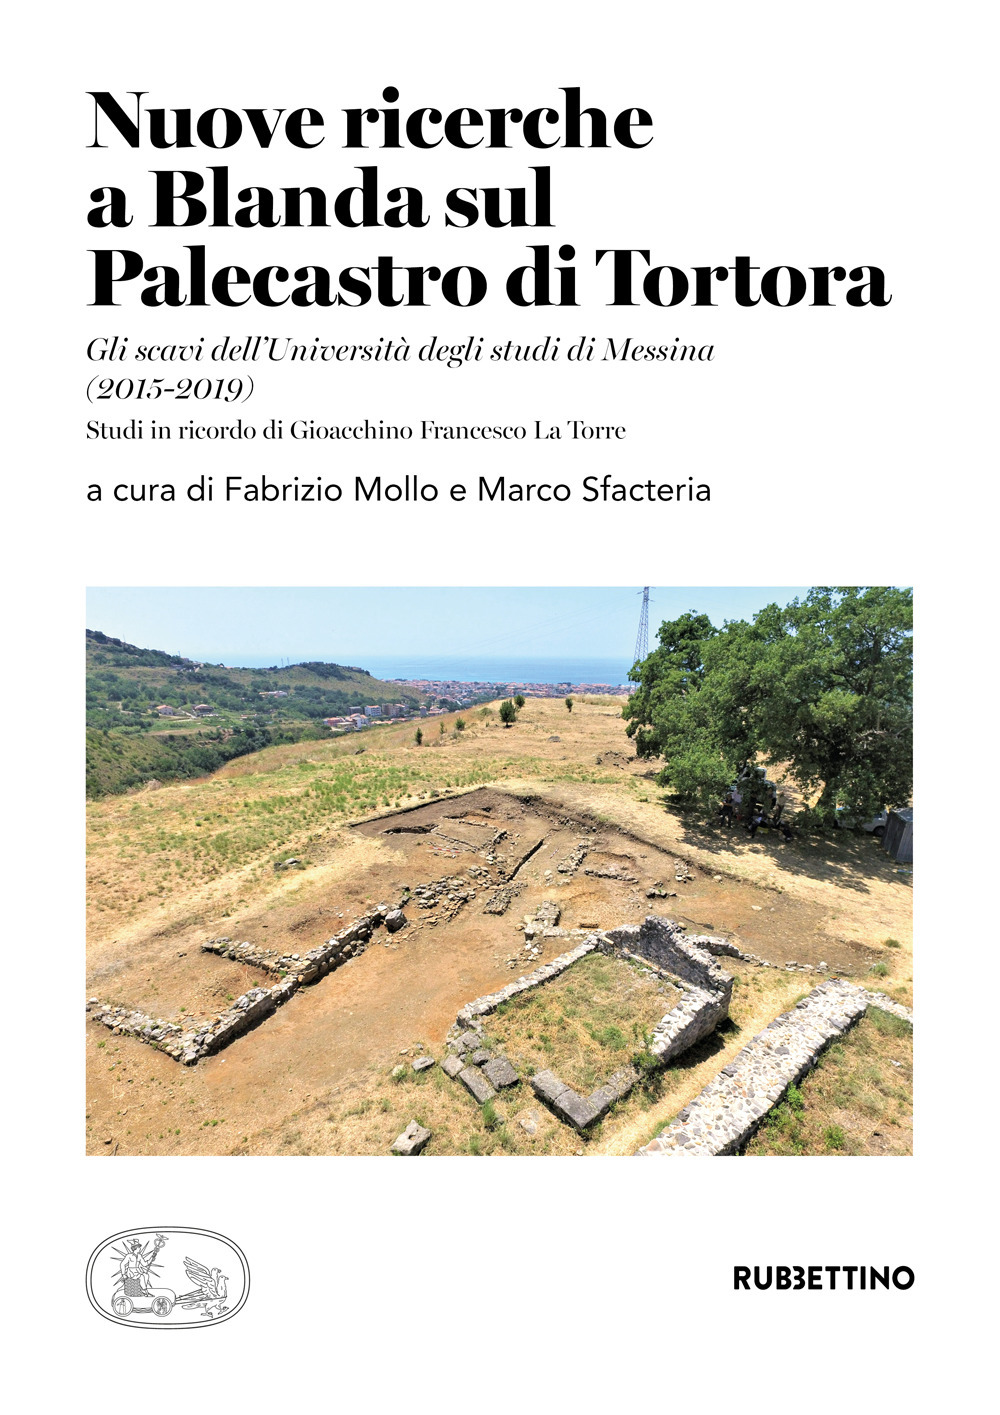 Nuove ricerche a Blanda sul Palecastro di Tortora. Gli scavi dell'Università degli studi di Messina (2015-2019). Studi in ricordo di Gioacchino Francesco La Torre